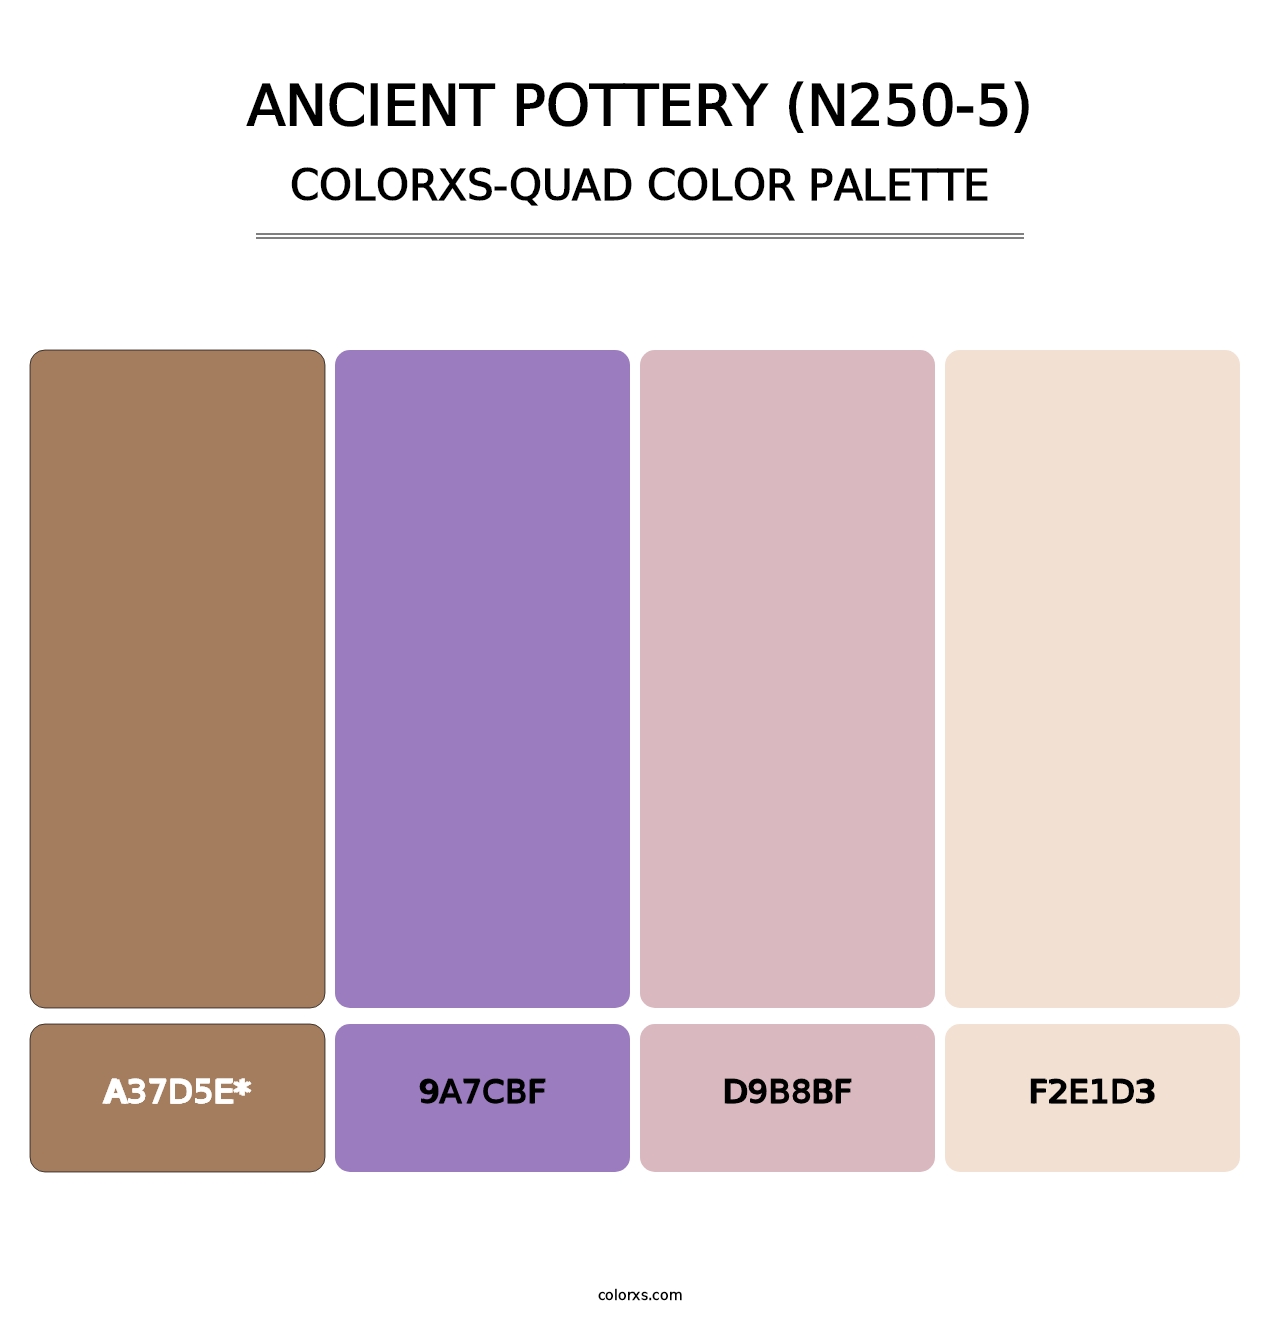 Ancient Pottery (N250-5) - Colorxs Quad Palette